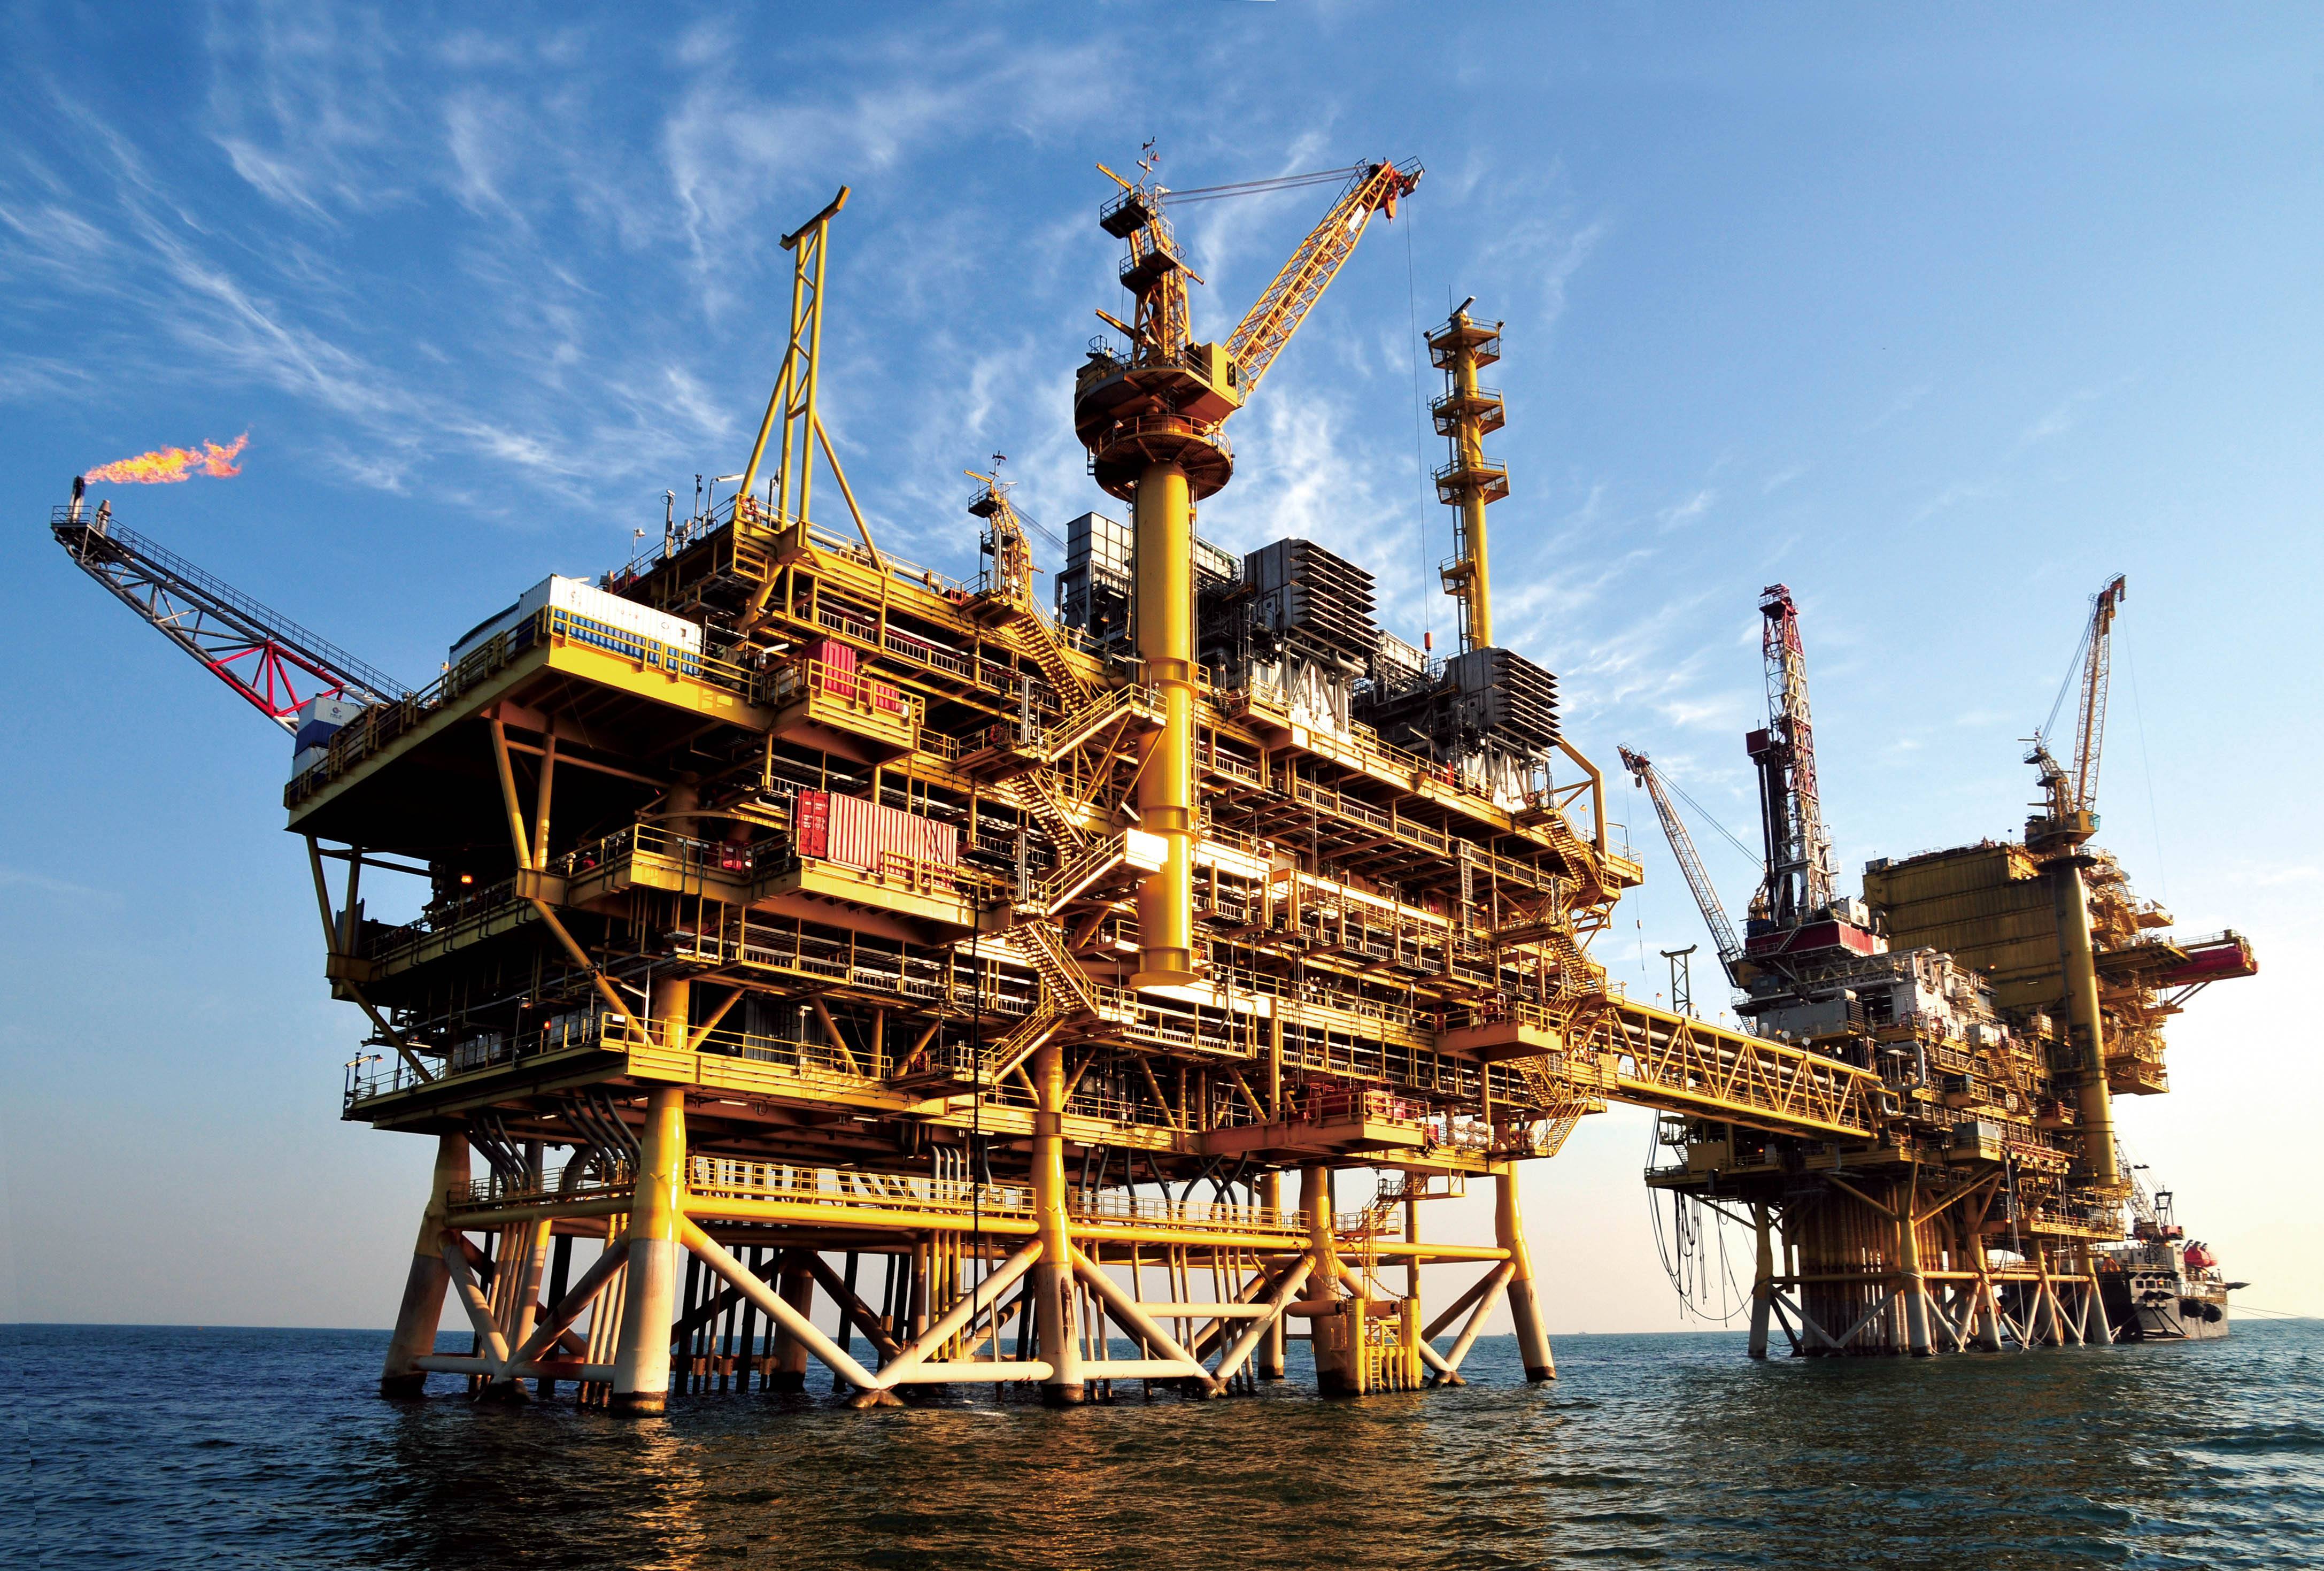 俄罗斯海上柴油库存增加对全球供应构成压力 